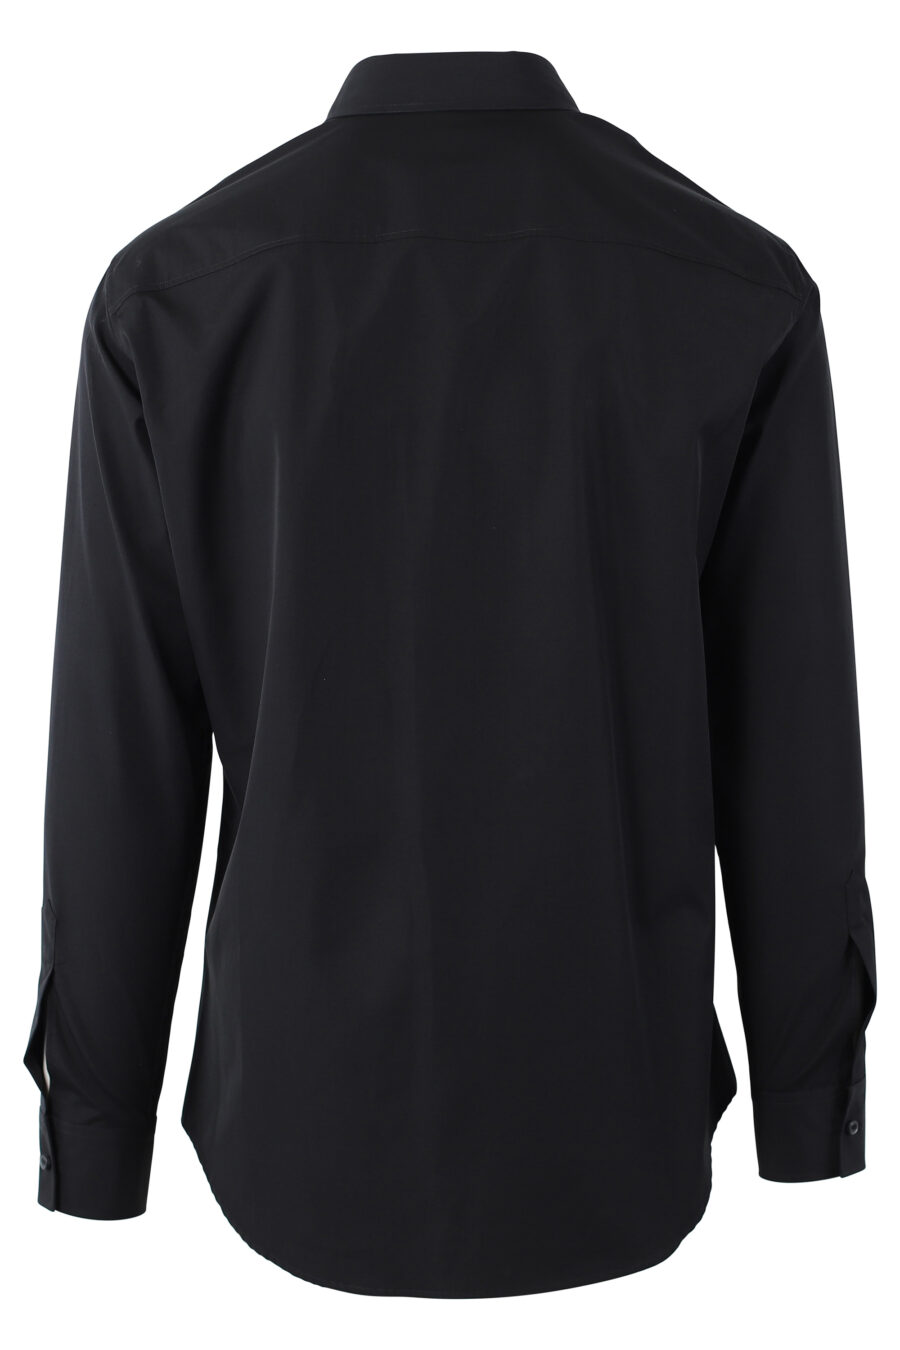 Camisa negra con maxilogo doble logo "icon" vertical - IMG 1103